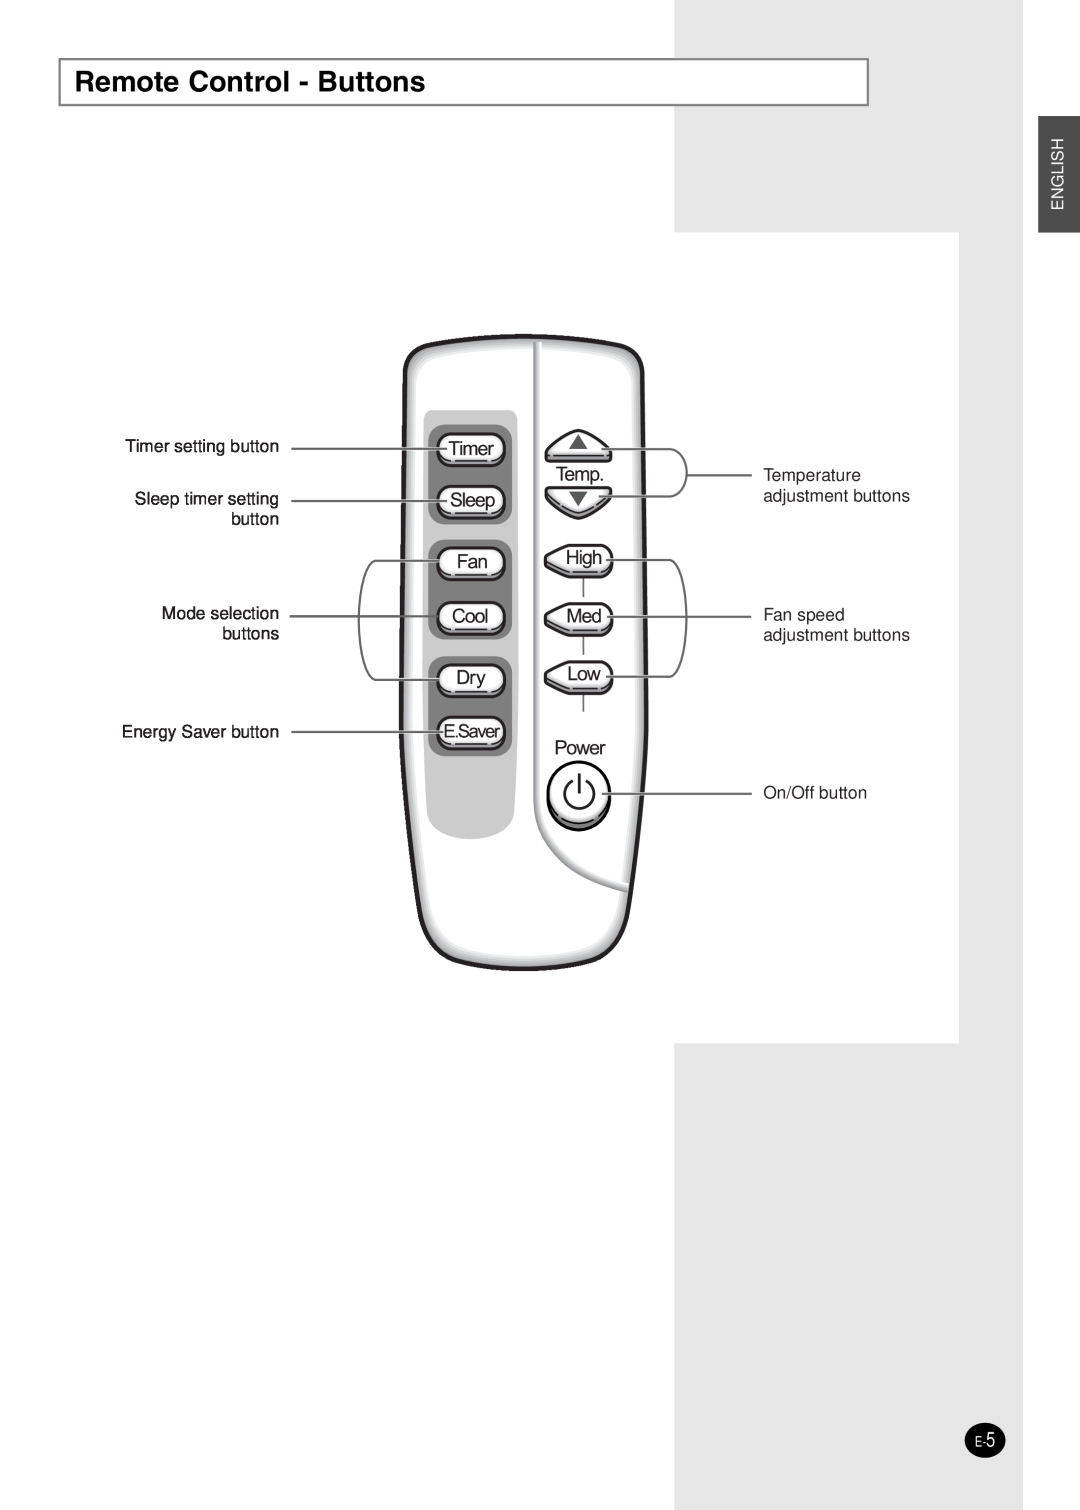 Danby DAC12344DE, DAC8404DE, DAC14004D Remote Control - Buttons, Timer setting button Sleep timer setting button, English 